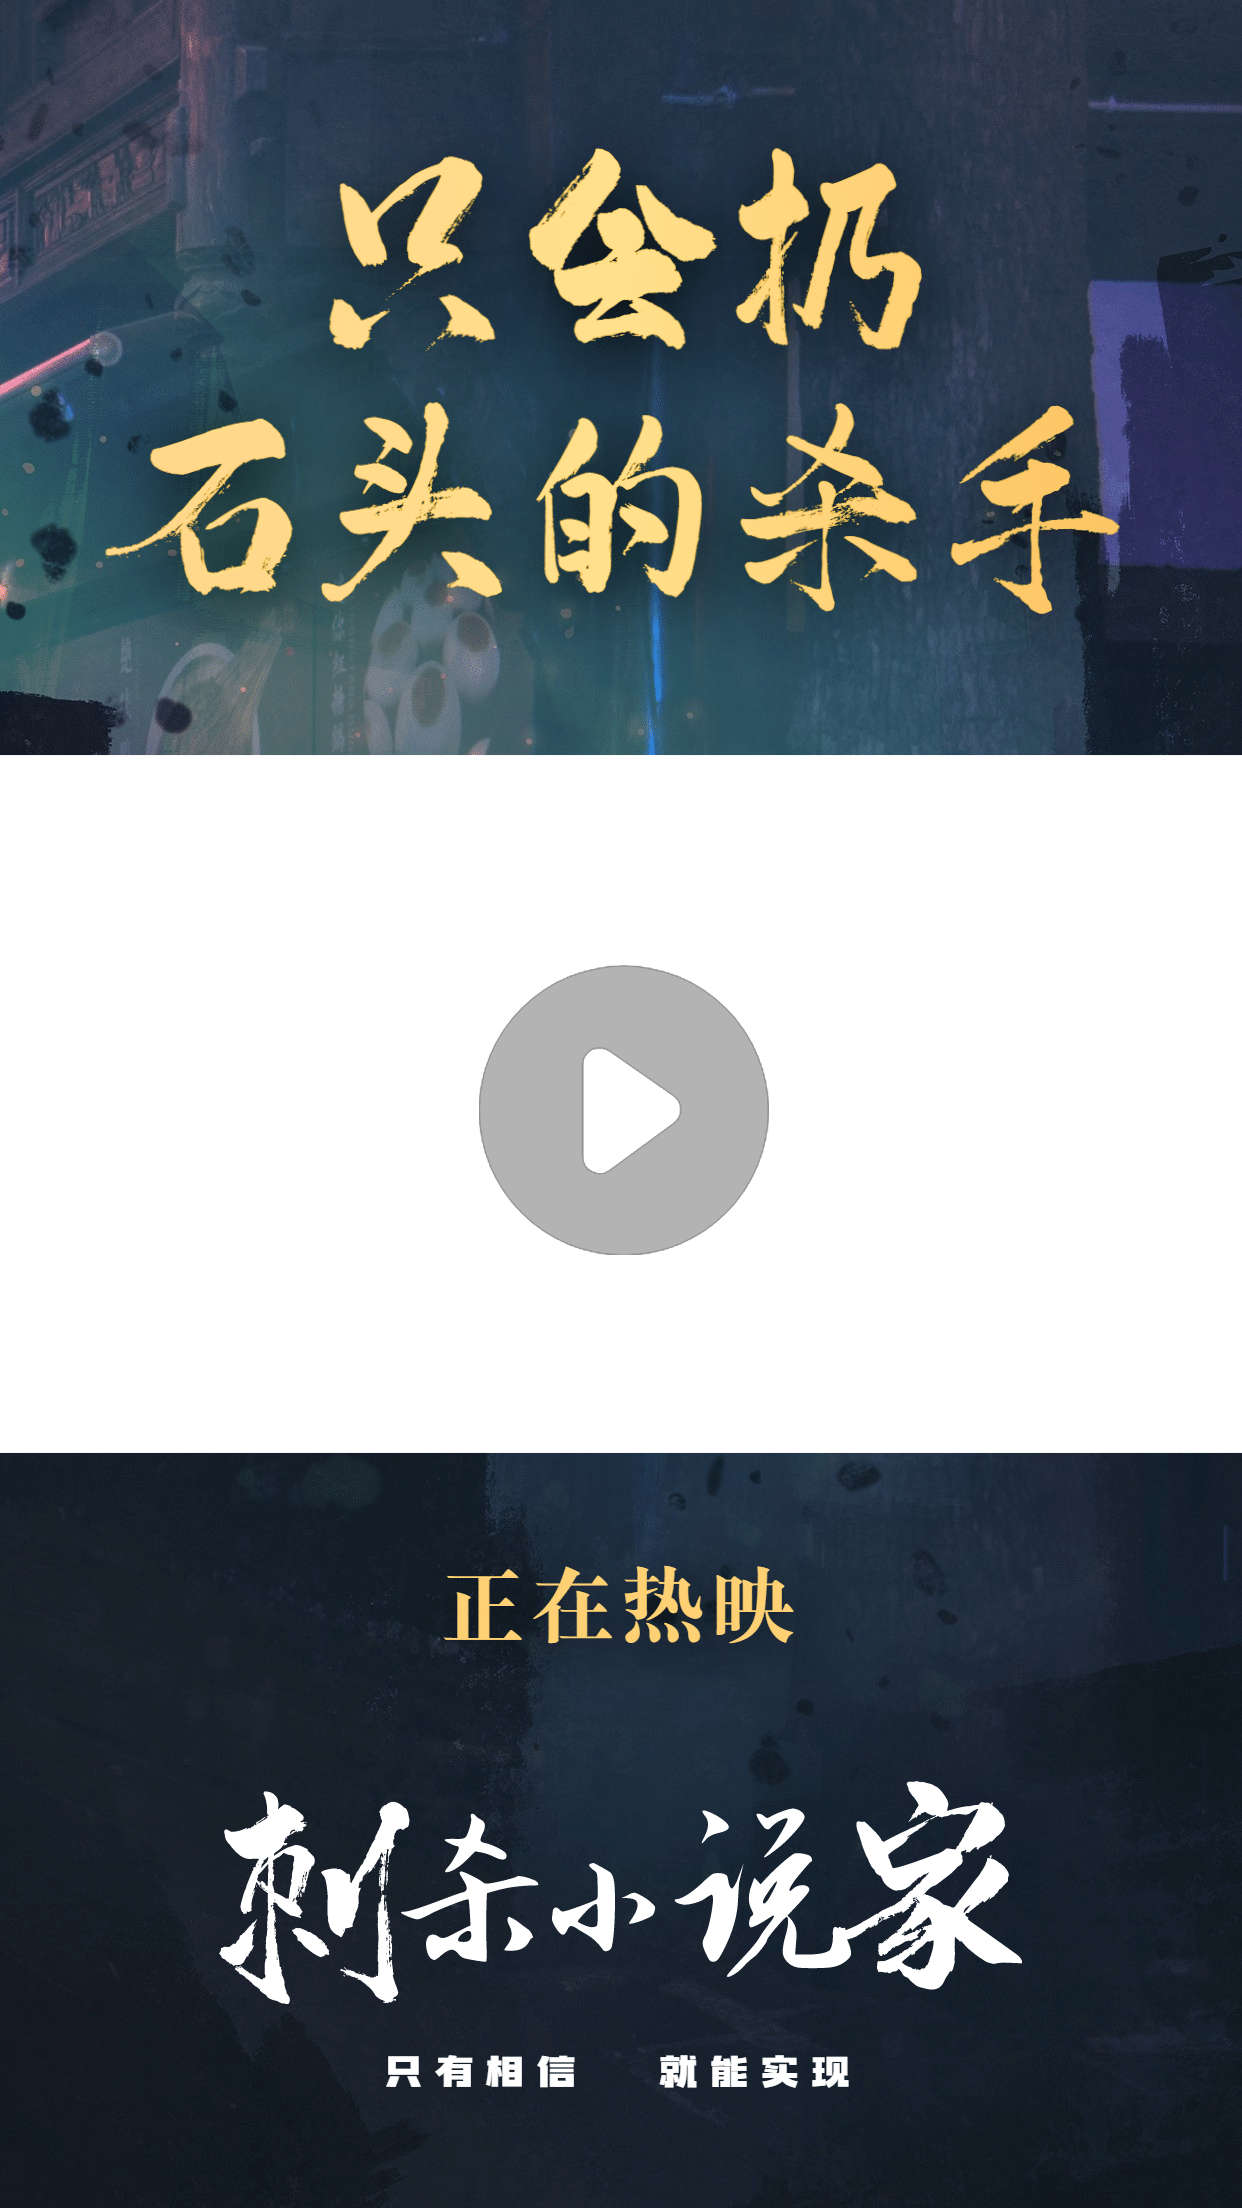 春节档电影分享推荐娱乐视频边框预览效果